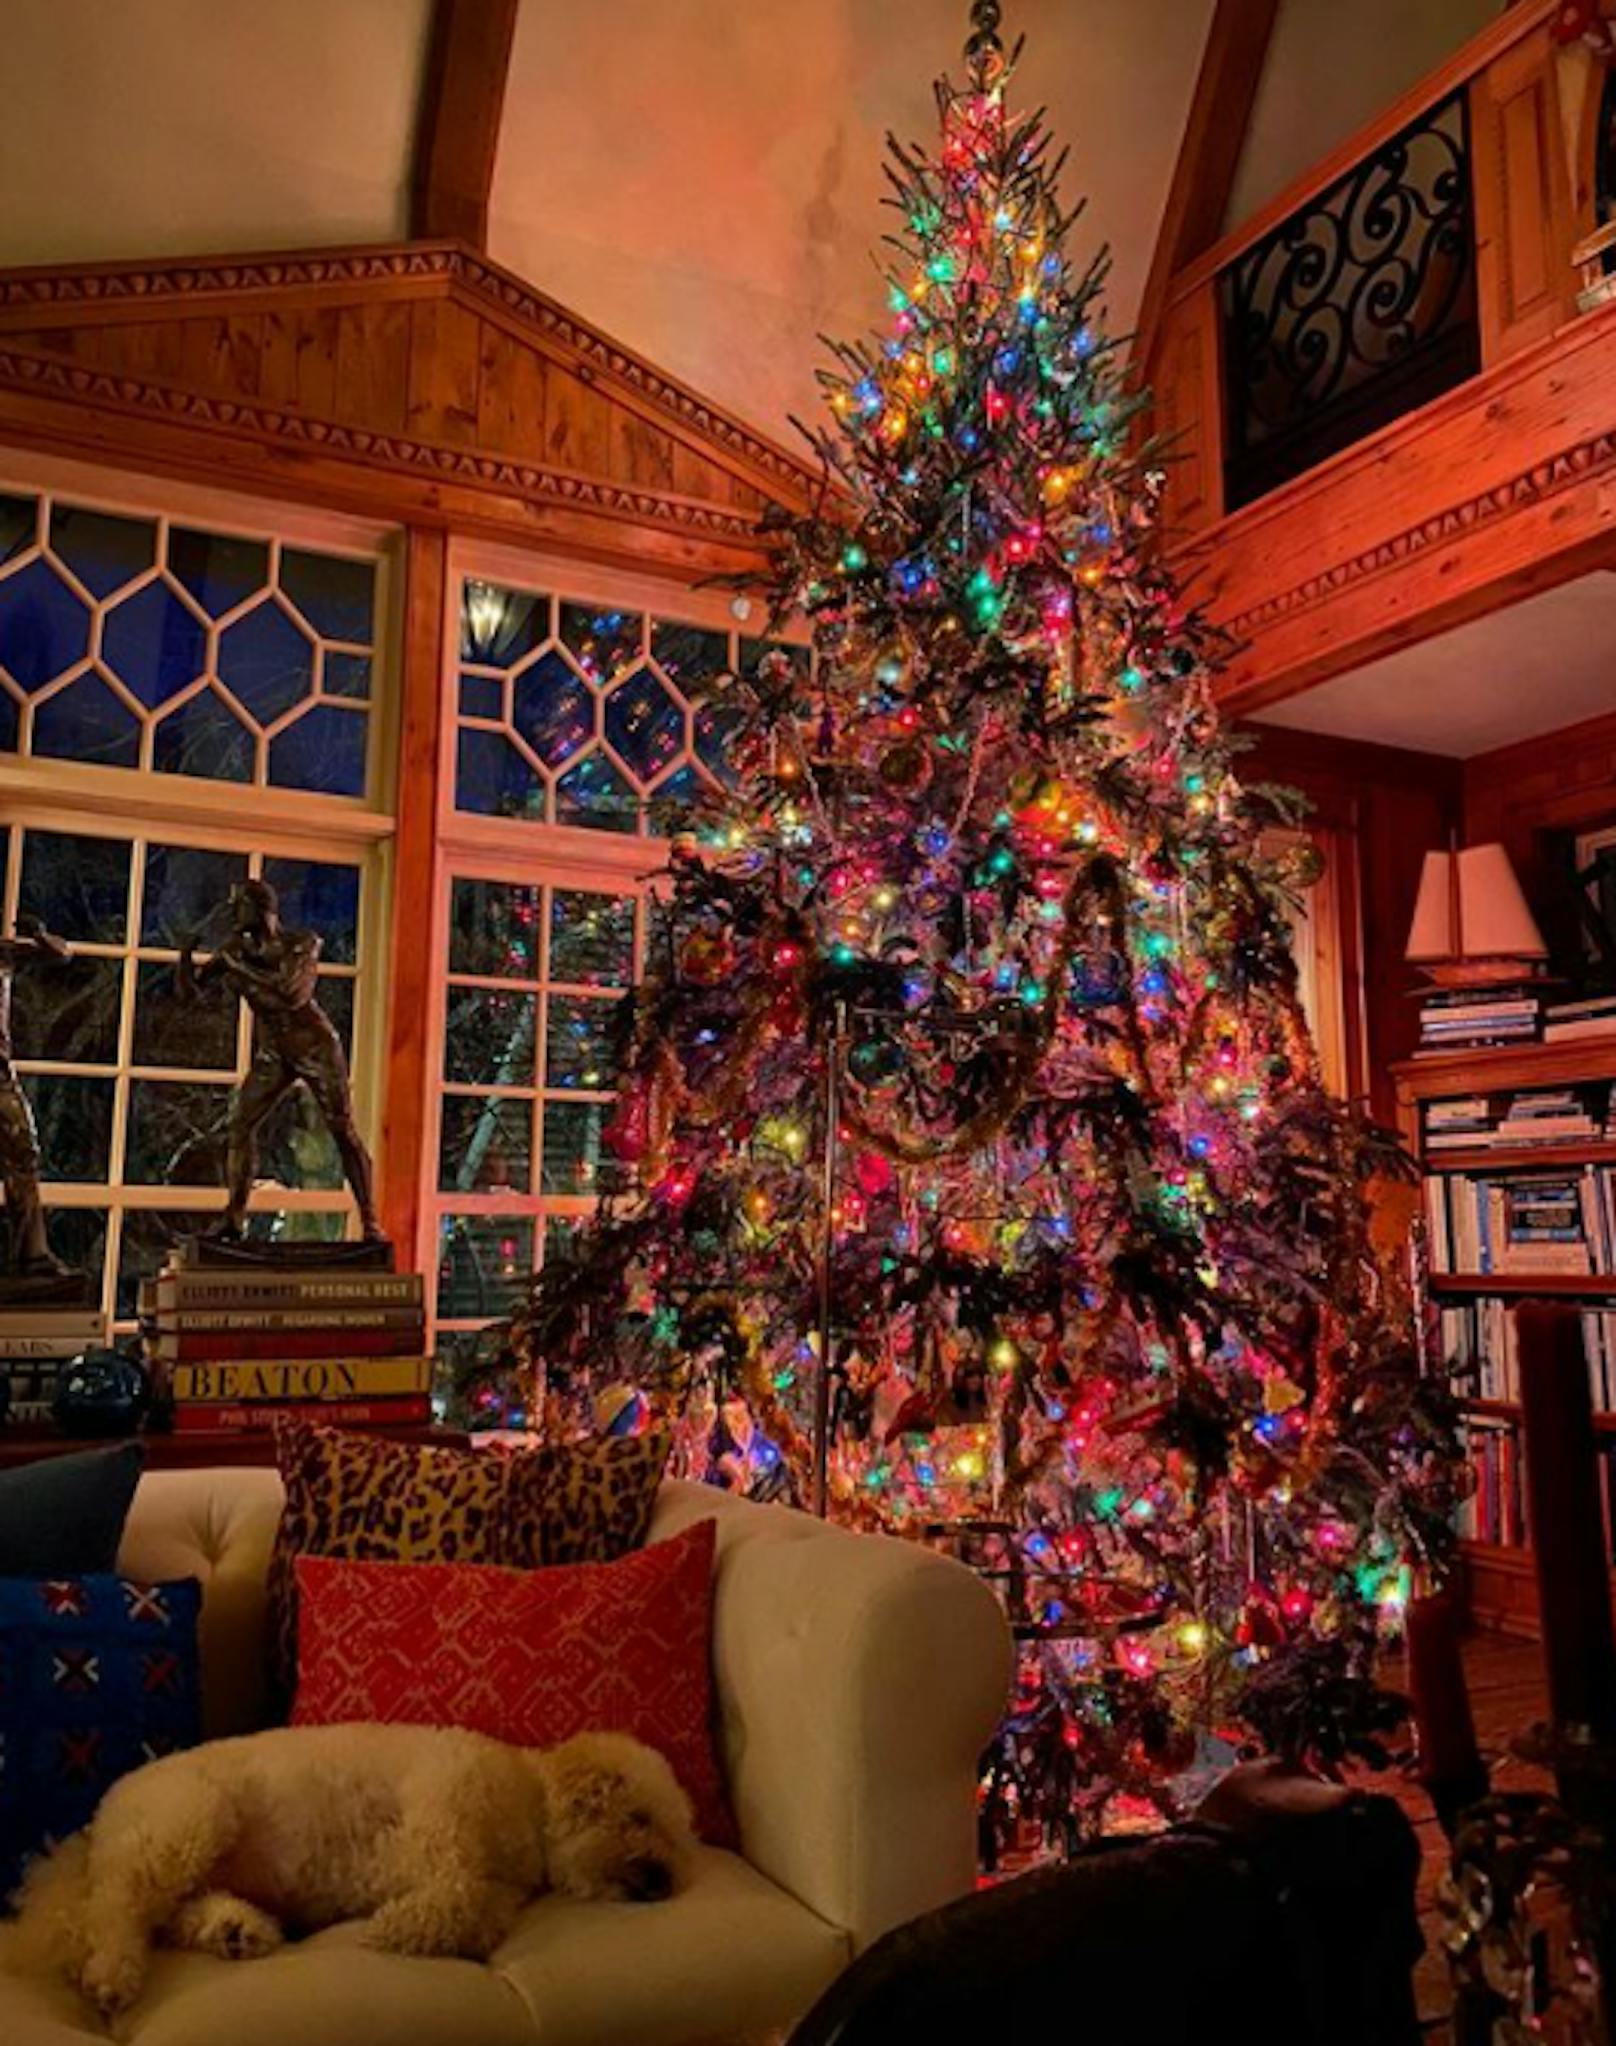 Supermodel Christie Brinkley zeigt ihren Weihnachtsbaum.